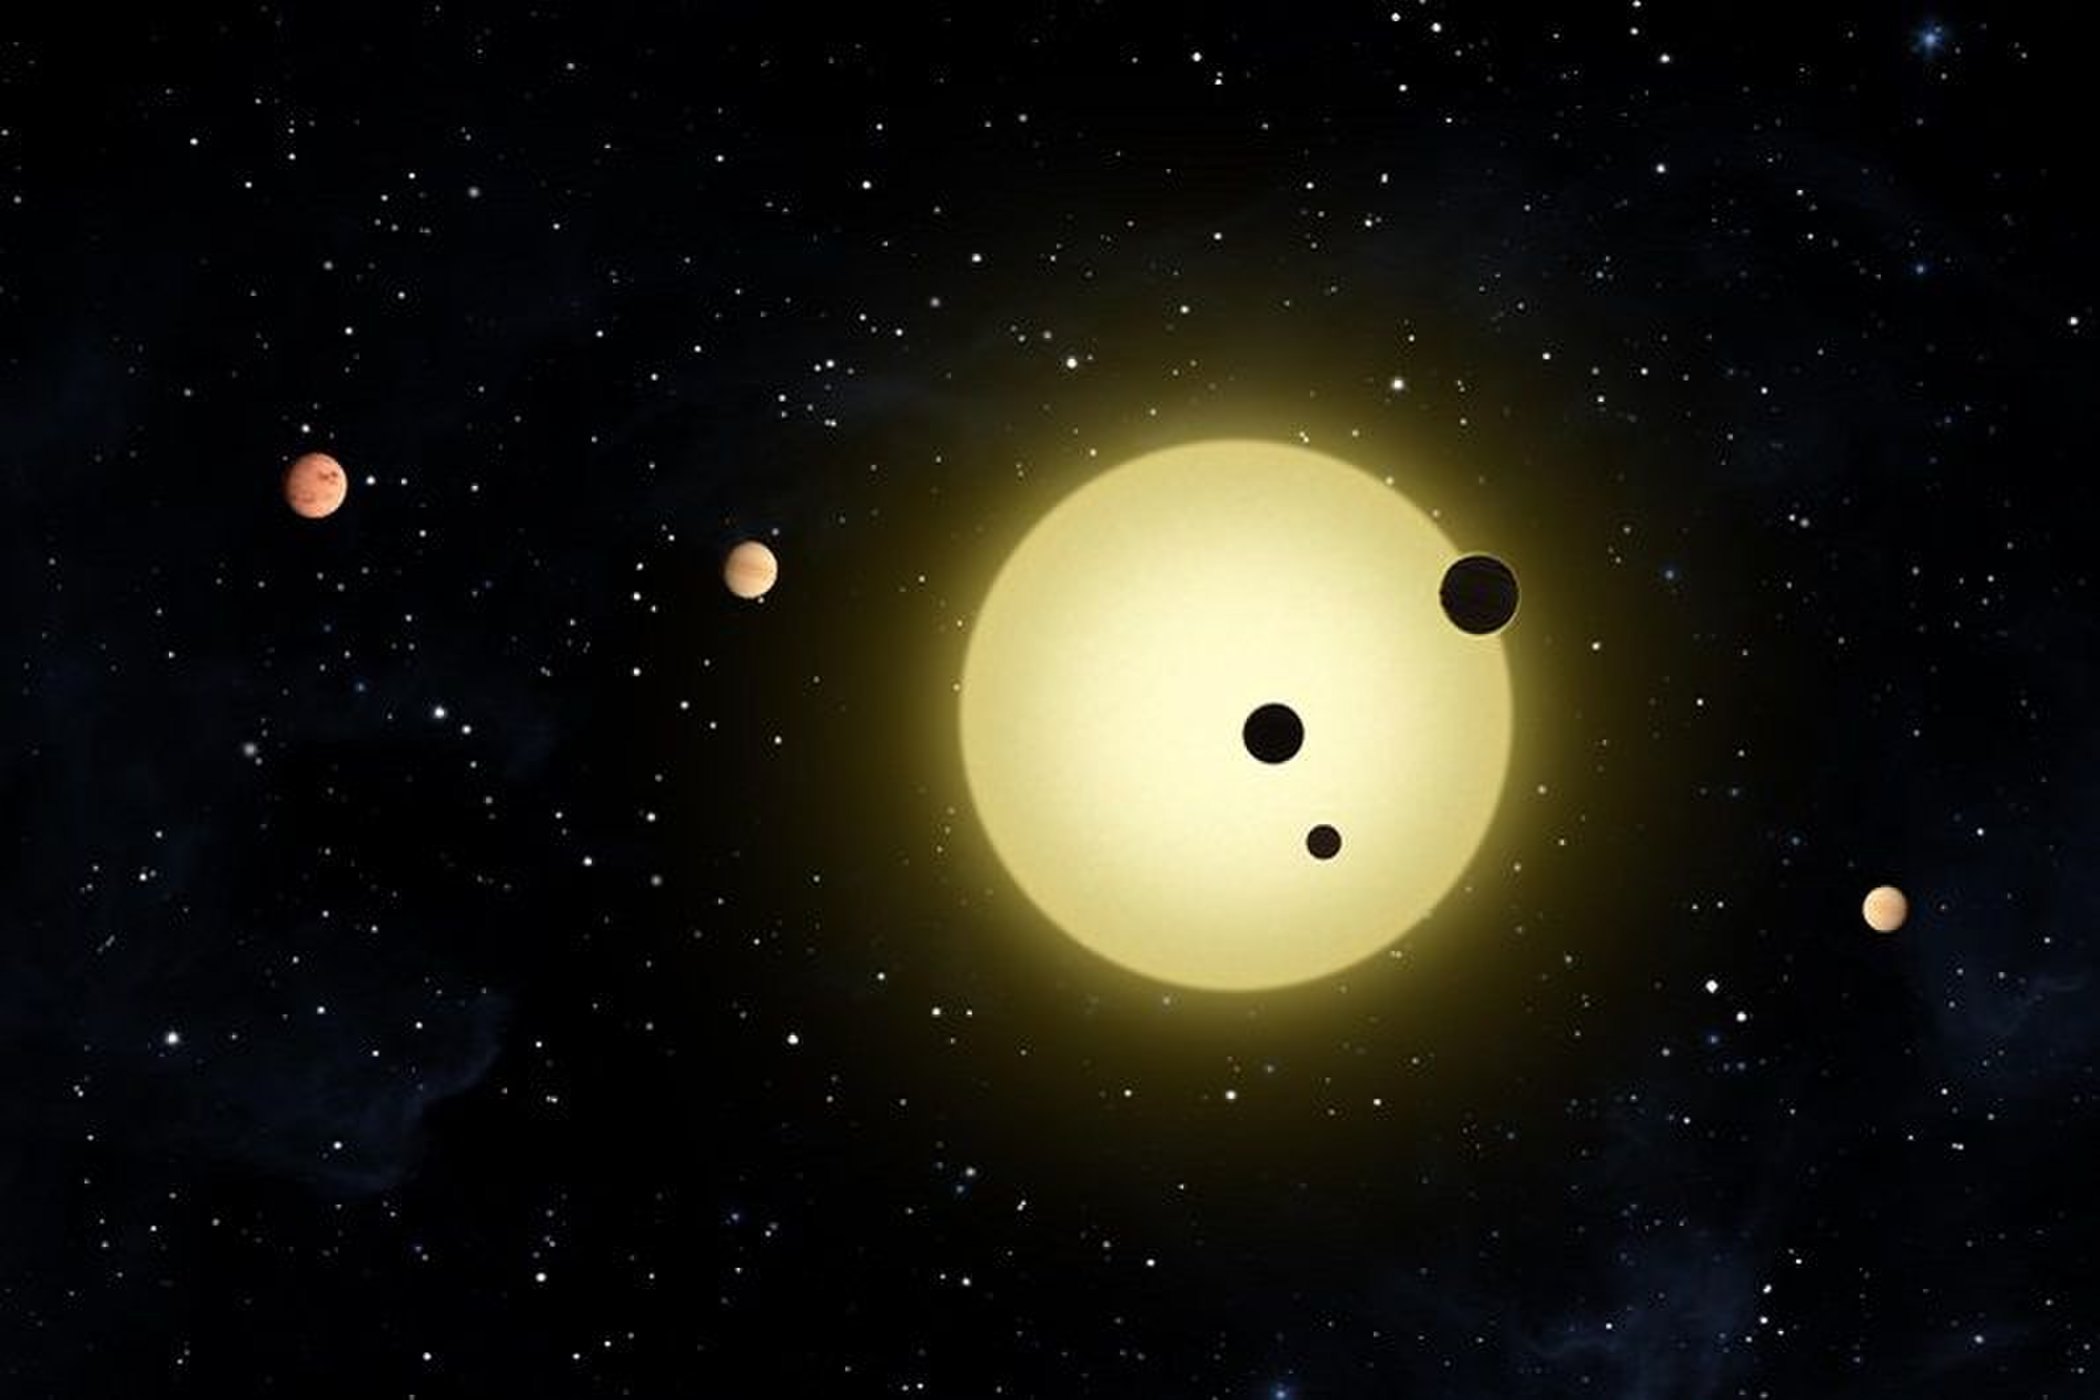 Das Kepler-11-System besteht aus einem sonnenähnlichen Stern den sechs Planeten umkreisen.